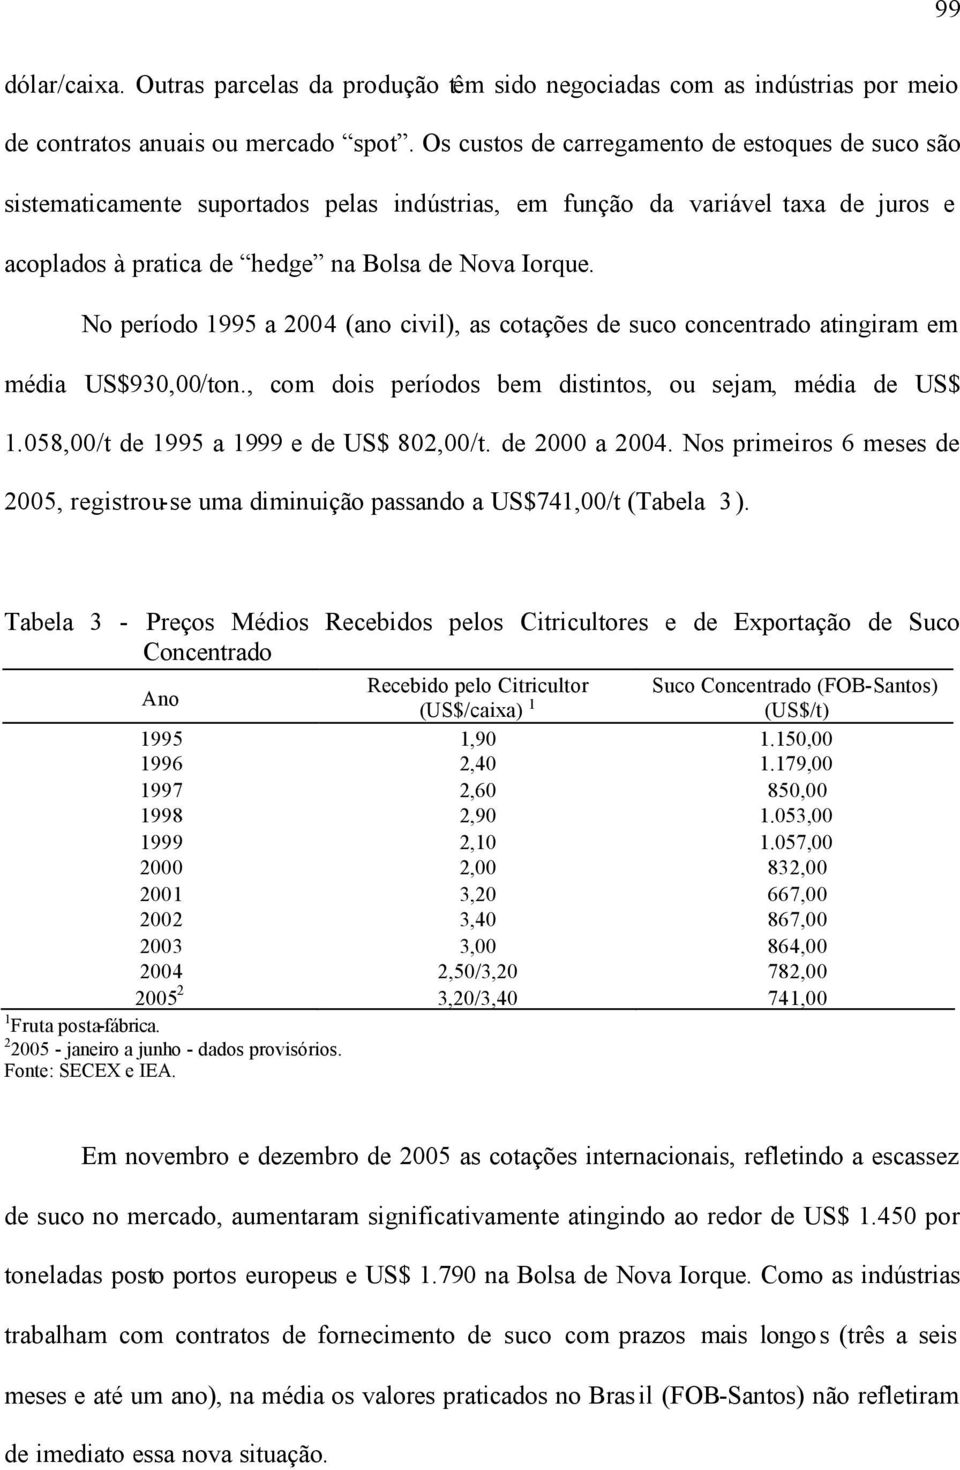 No período 1995 a 2004 (ano civil), as cotações de suco concentrado atingiram em média US$930,00/ton., com dois períodos bem distintos, ou sejam, média de US$ 1.